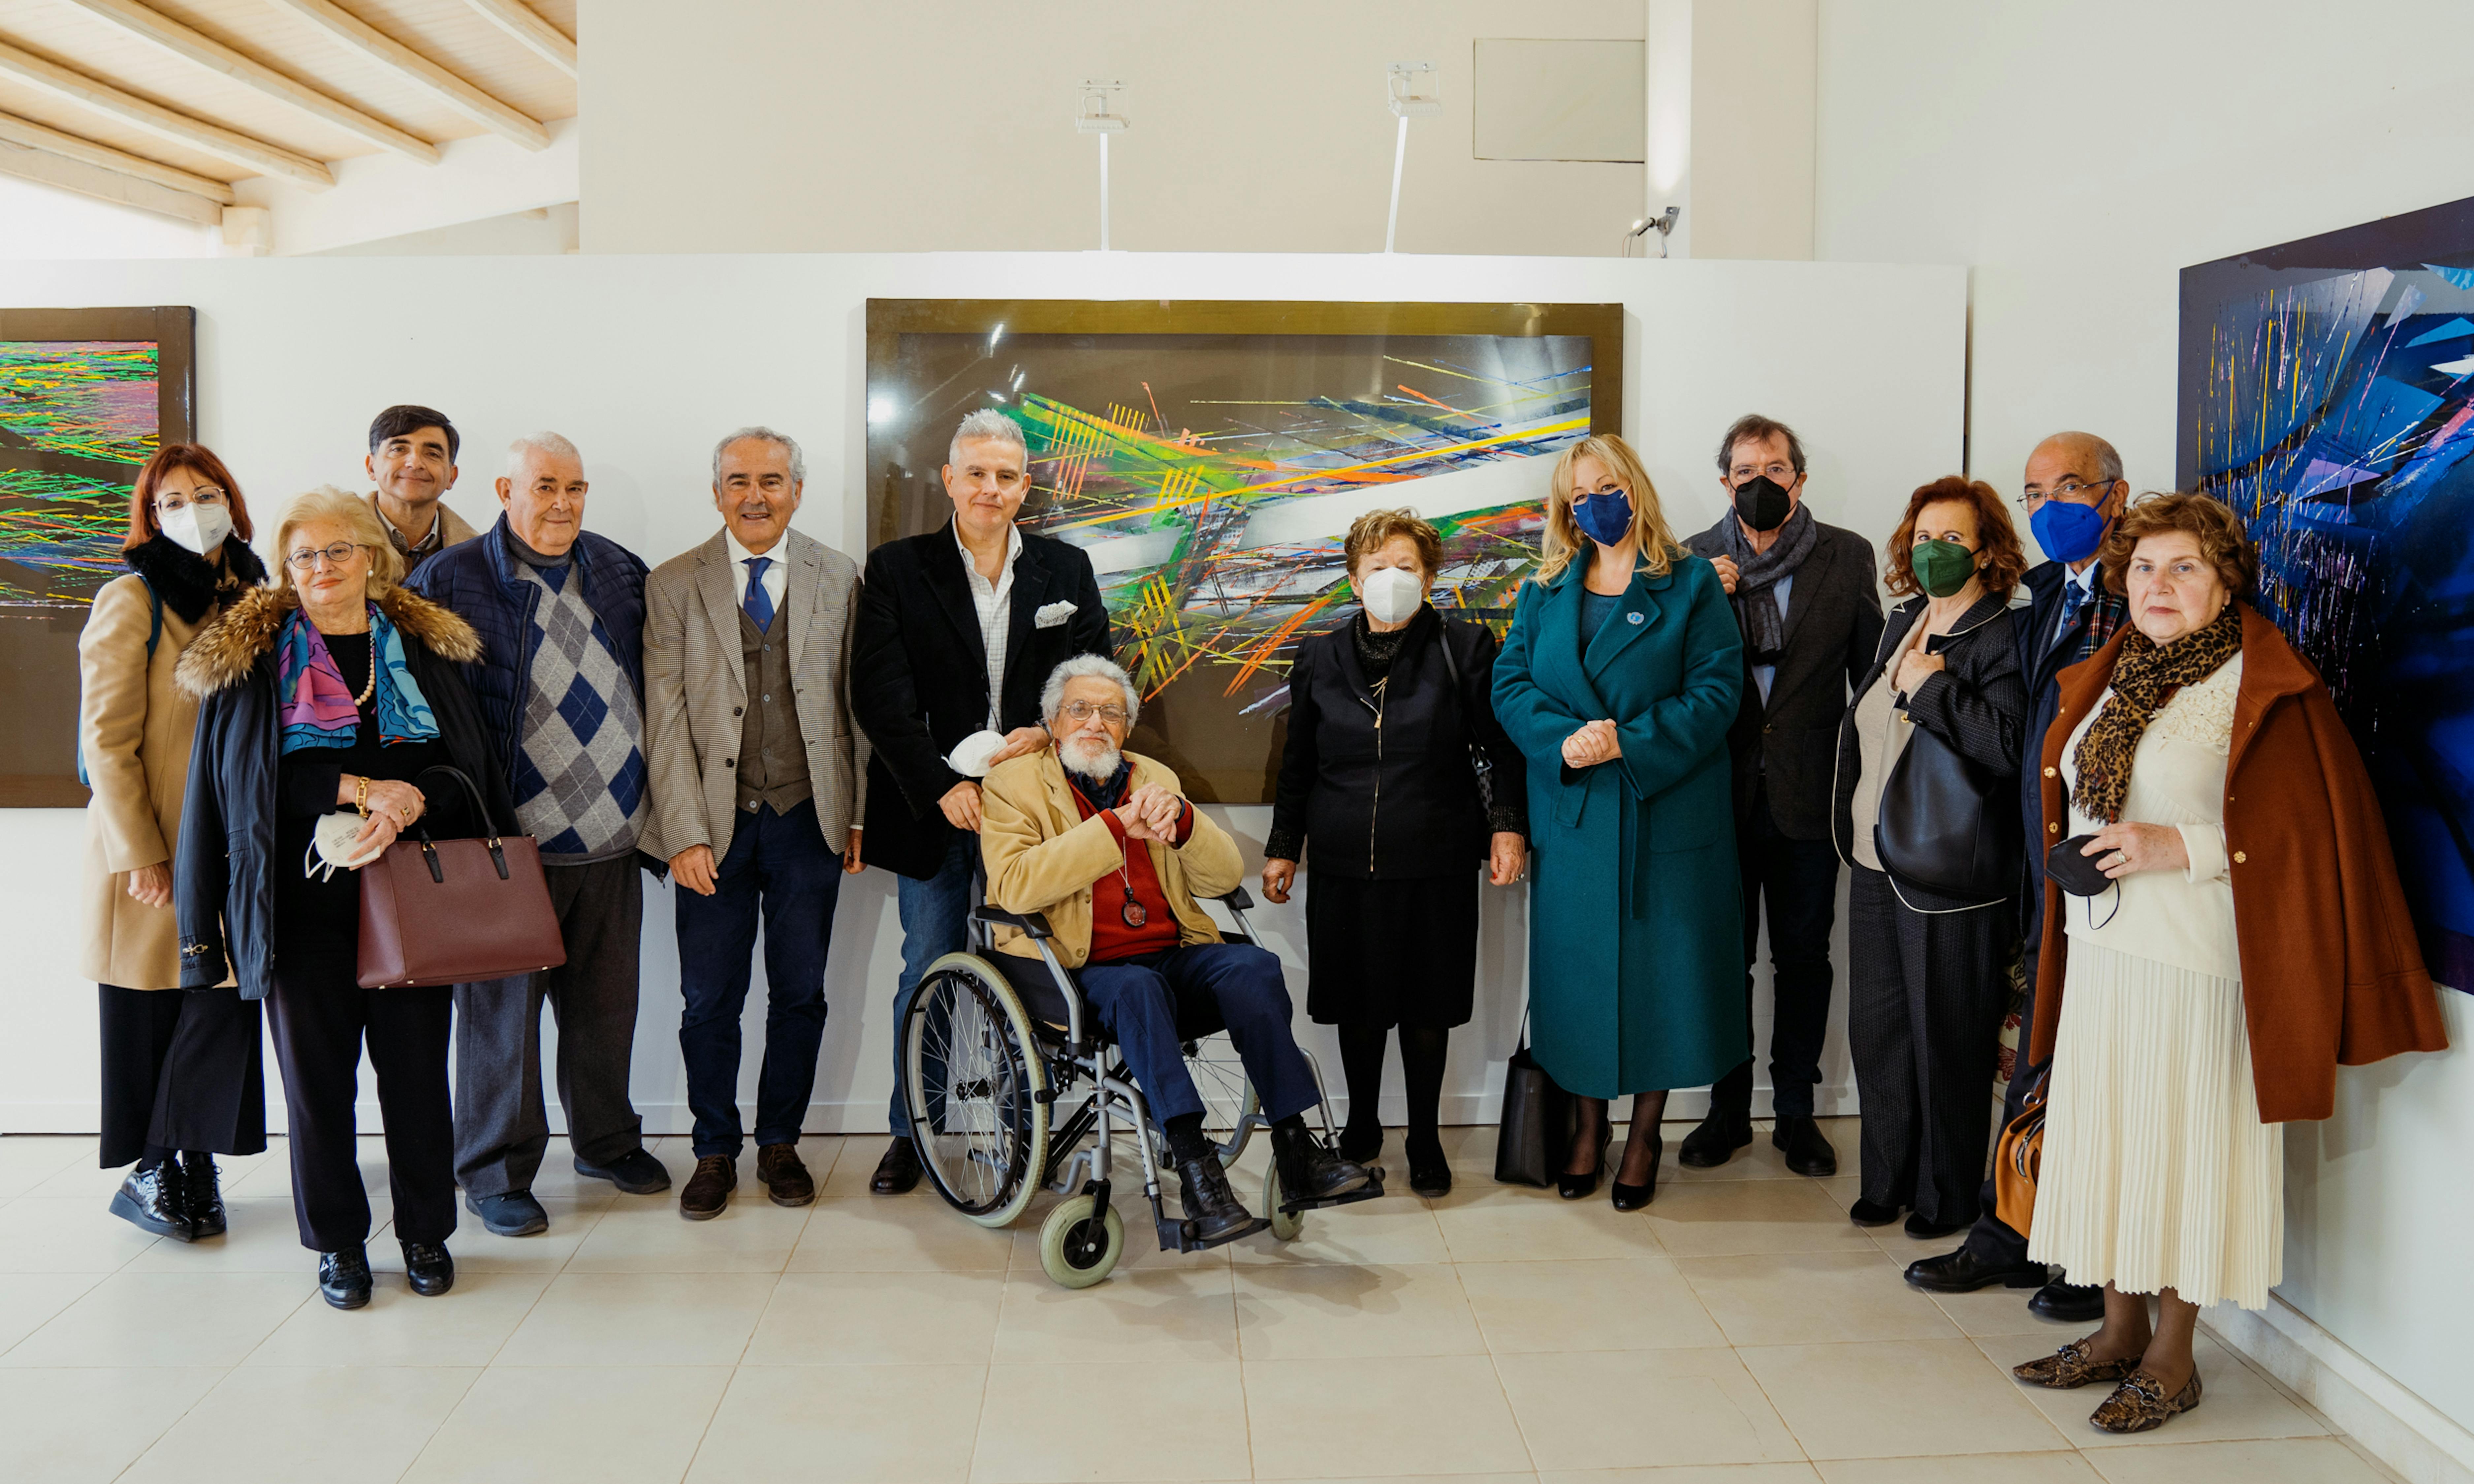 Foto di gruppo dei parteicpanti alla mostra di Turi Sottile, al centro la presidente Carmela Pace.  Foto di Organica Officina